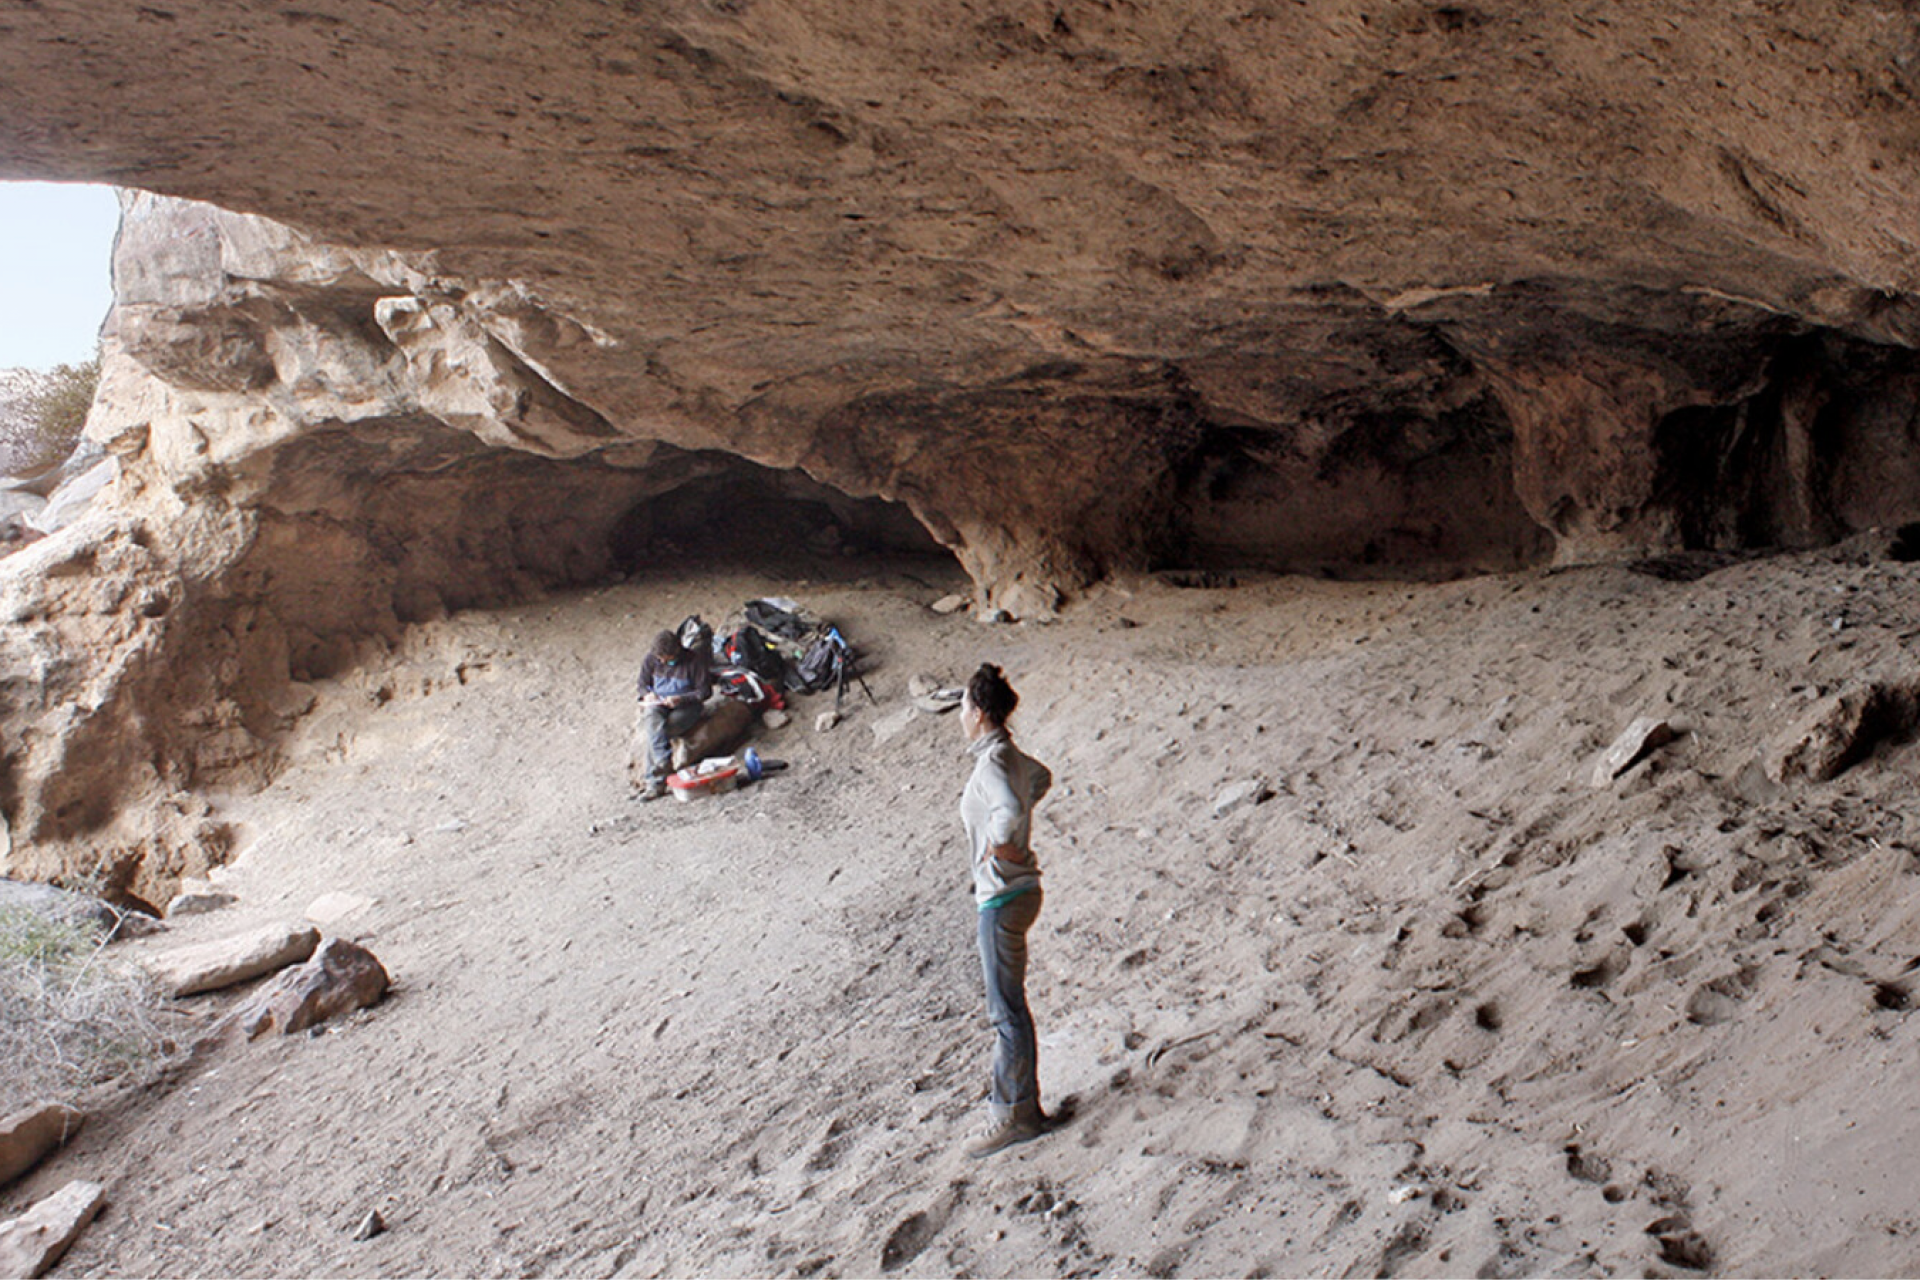 Cueva Huenul 1 and the Patagonian desert 